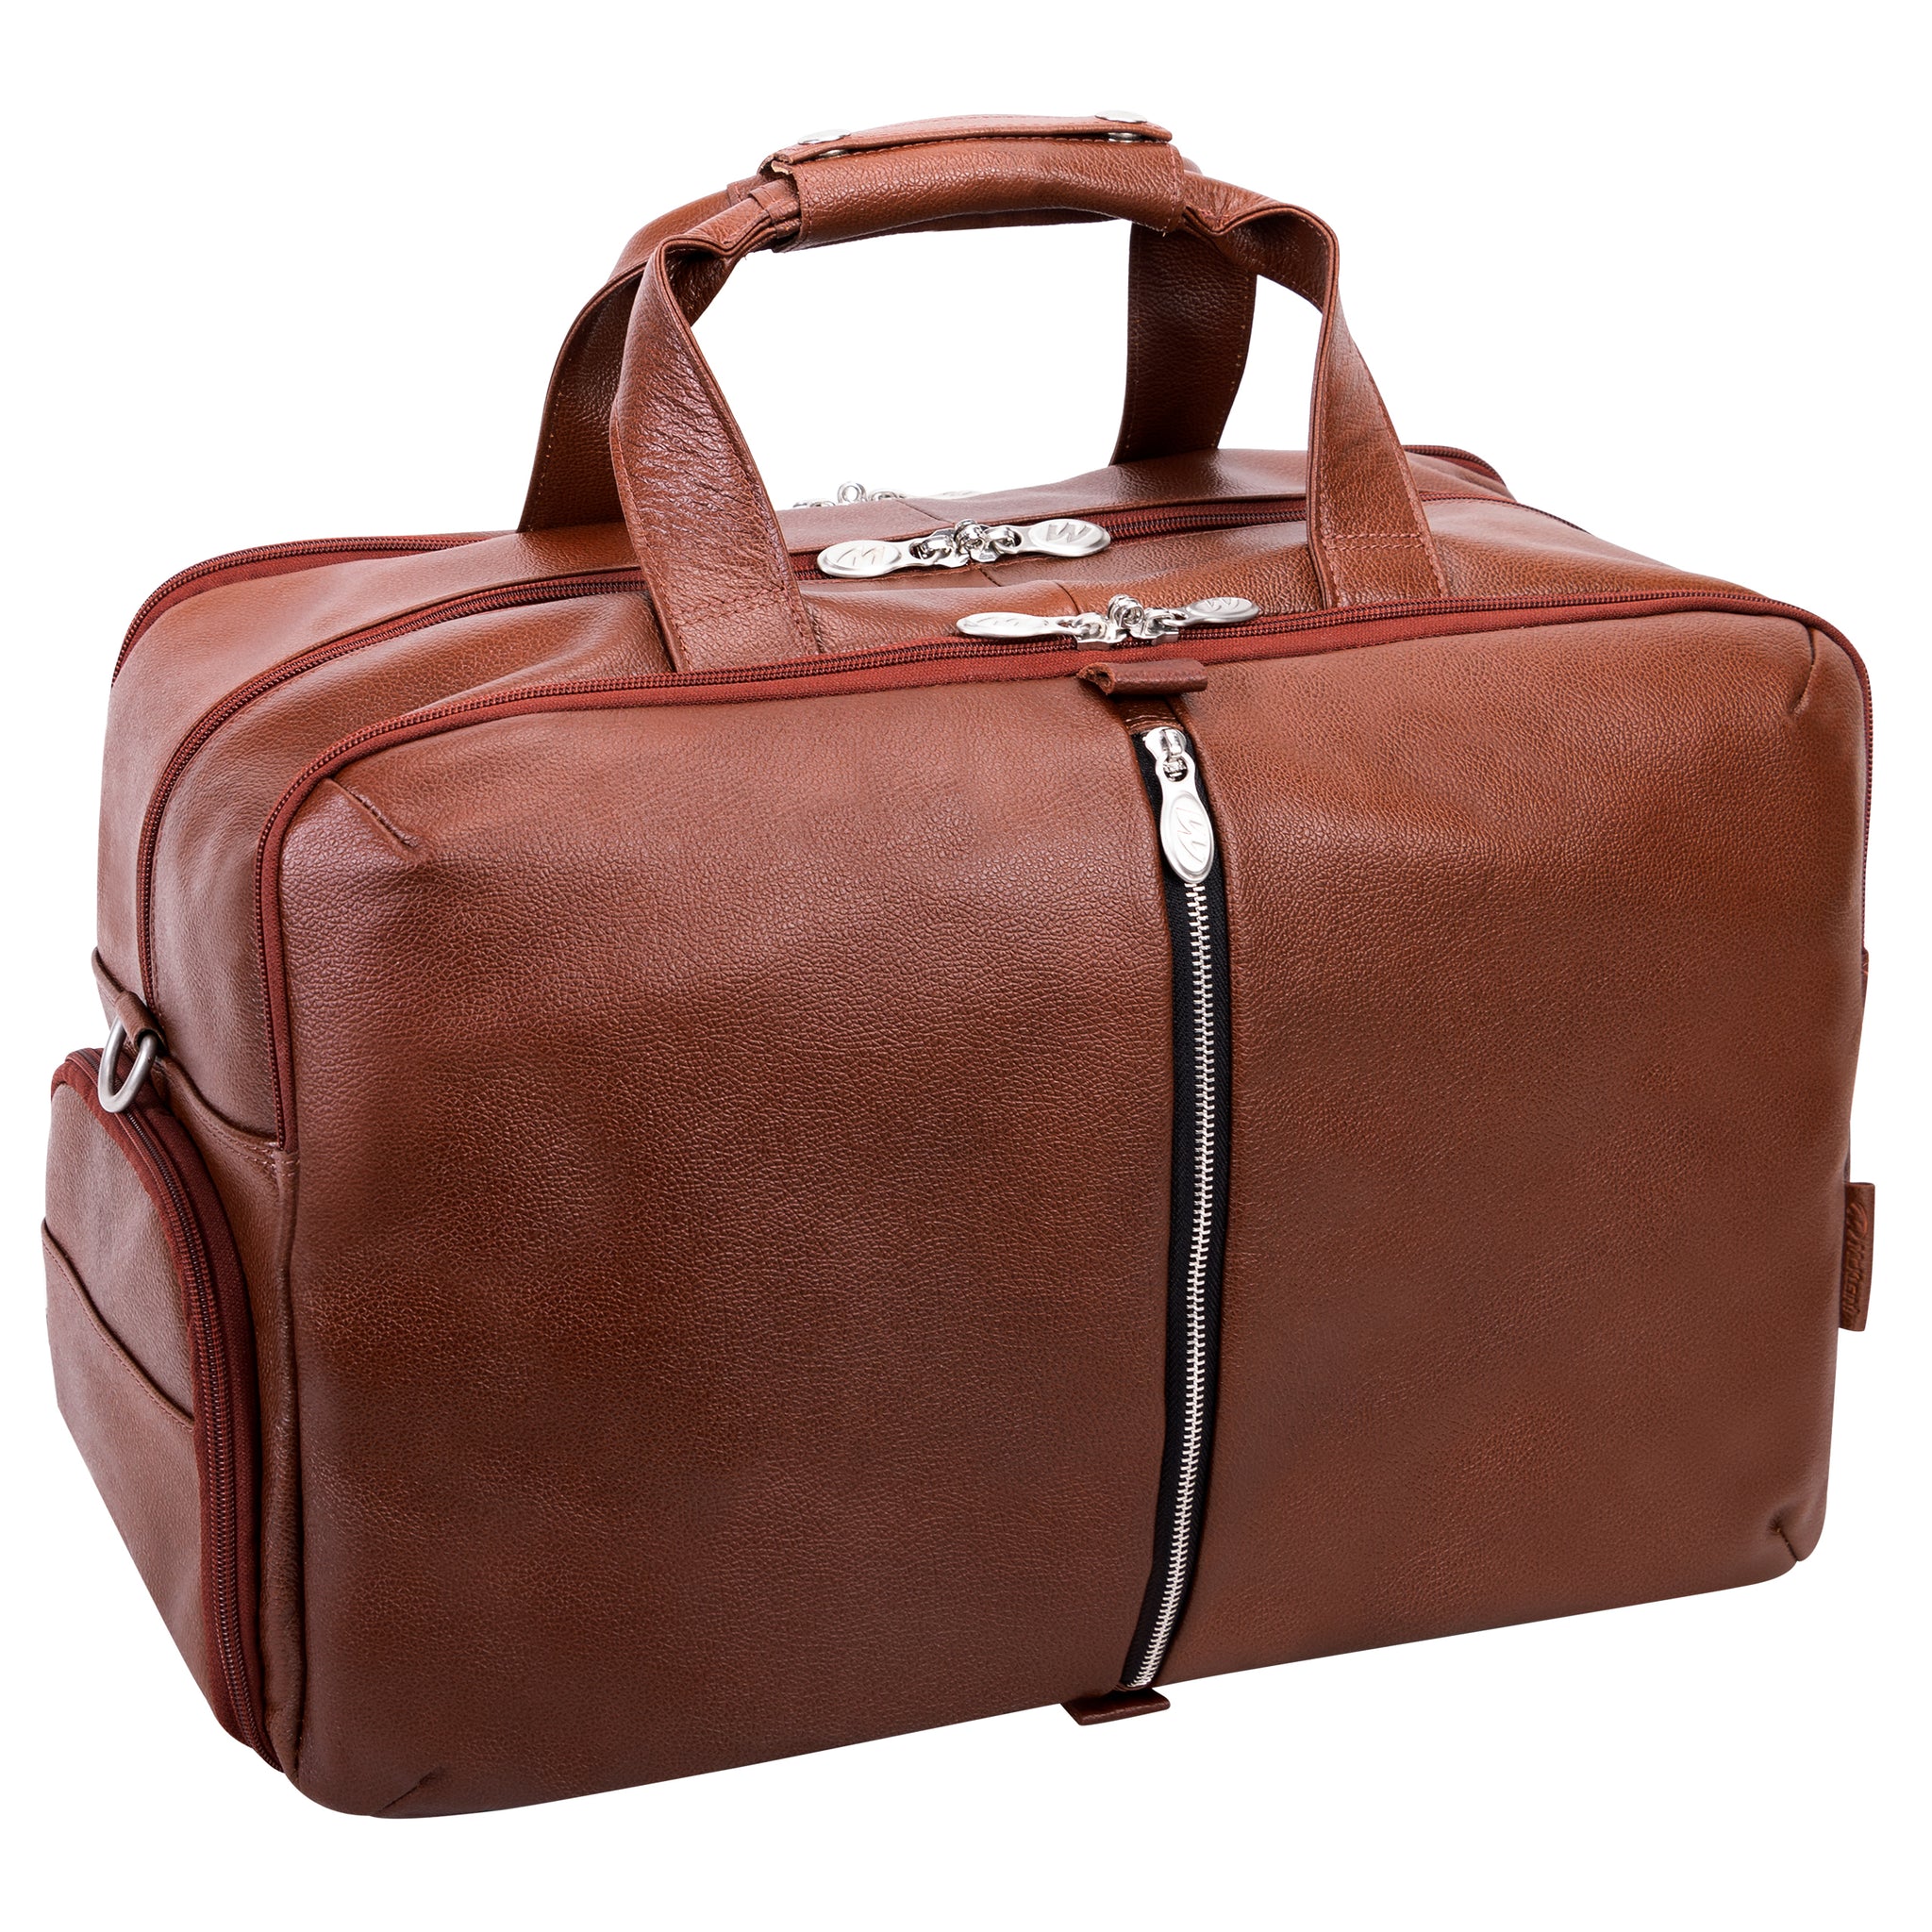 McKlein AVONDALE 19" Leather Triple Compartment Laptop Duffel Bag